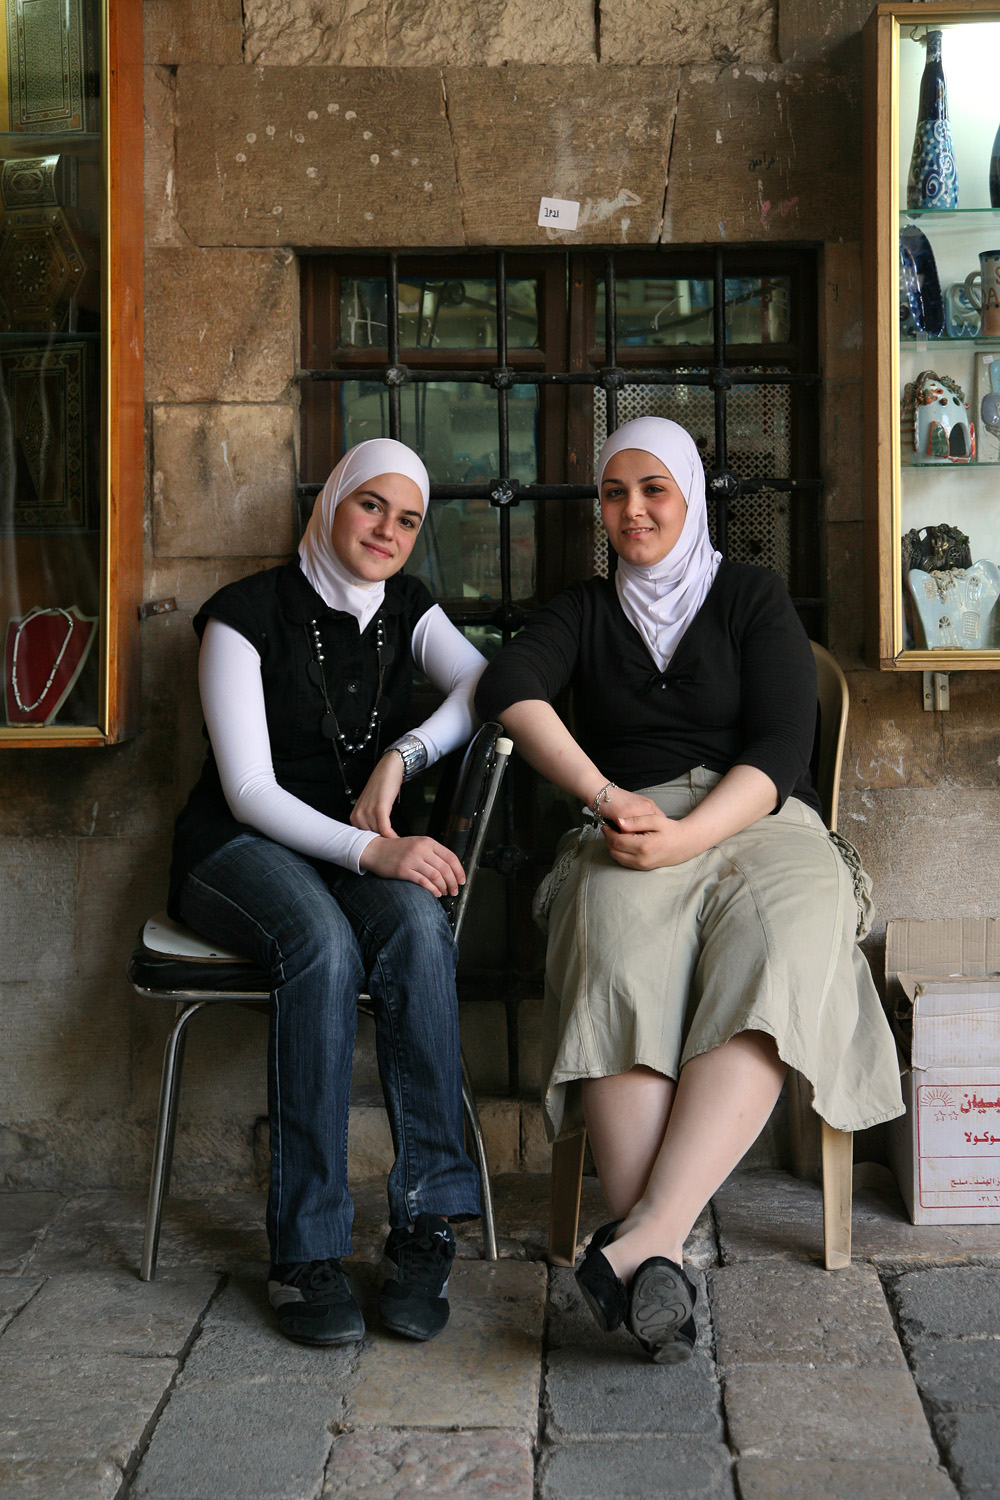 bill-hocker-craft-market-damascus-syria-2008